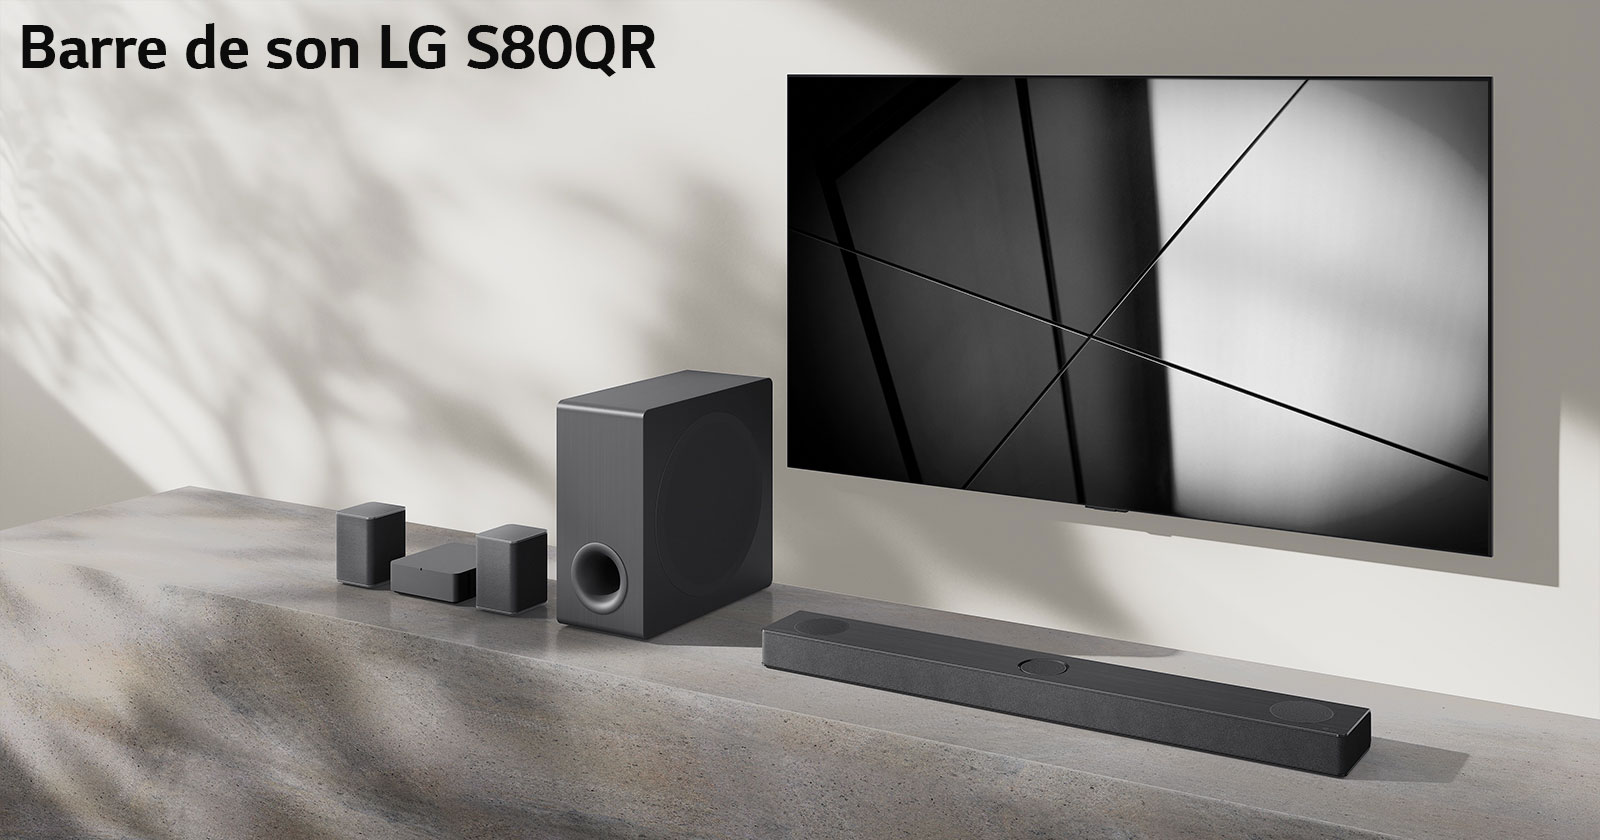 La barre de son S80QR de LG et le téléviseur LG sont placés ensemble dans le salon. Le téléviseur est allumé et projette une image en noir et blanc.